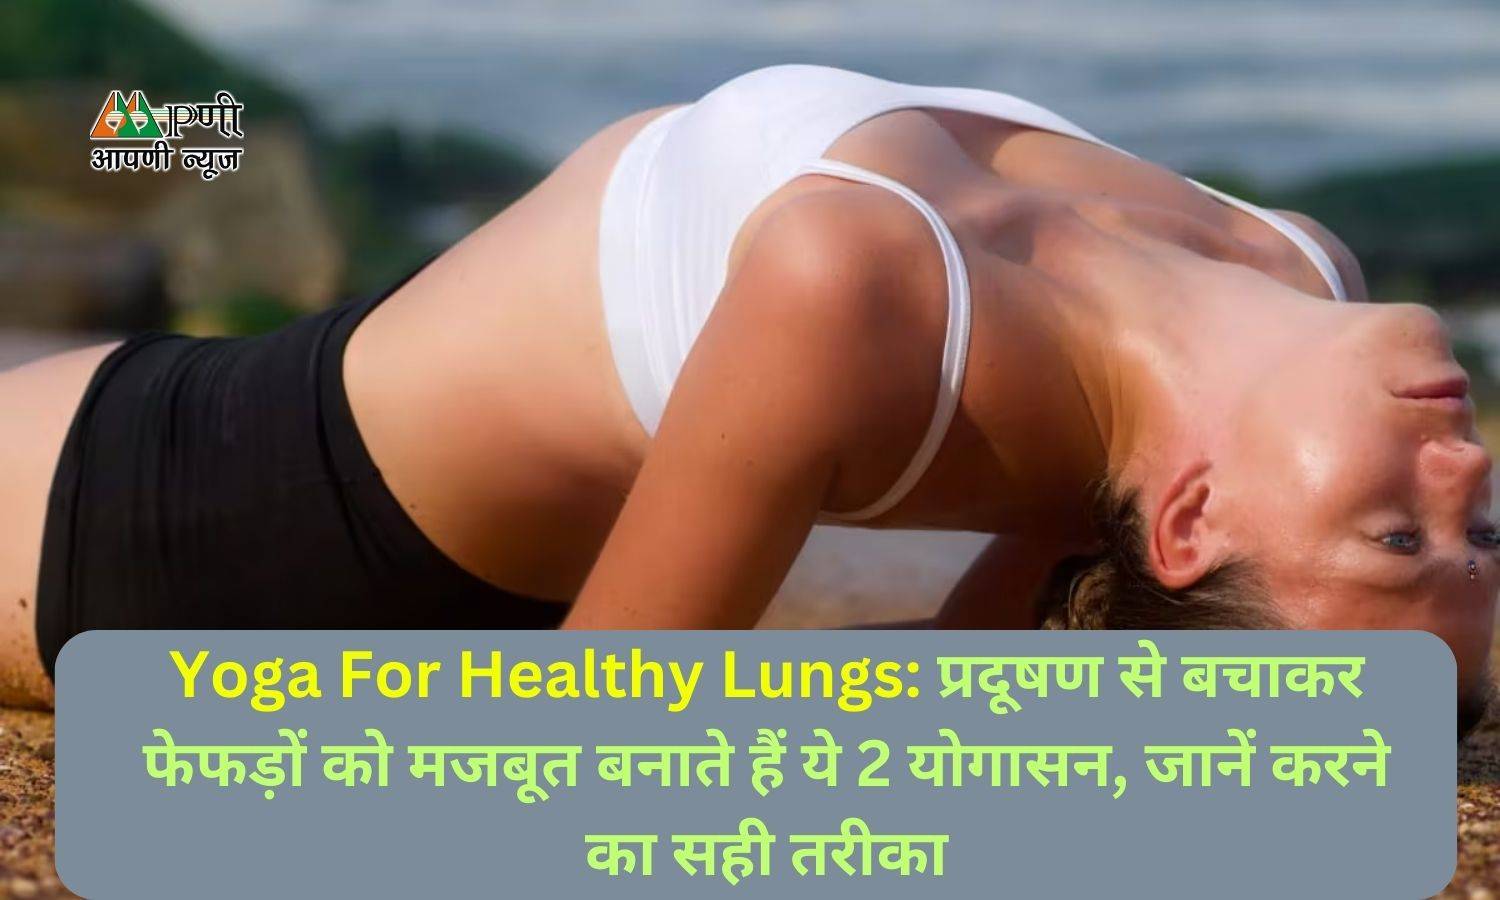 Yoga For Healthy Lungs: प्रदूषण से बचाकर फेफड़ों को मजबूत बनाते हैं ये 2 योगासन, जानें करने का सही तरीका